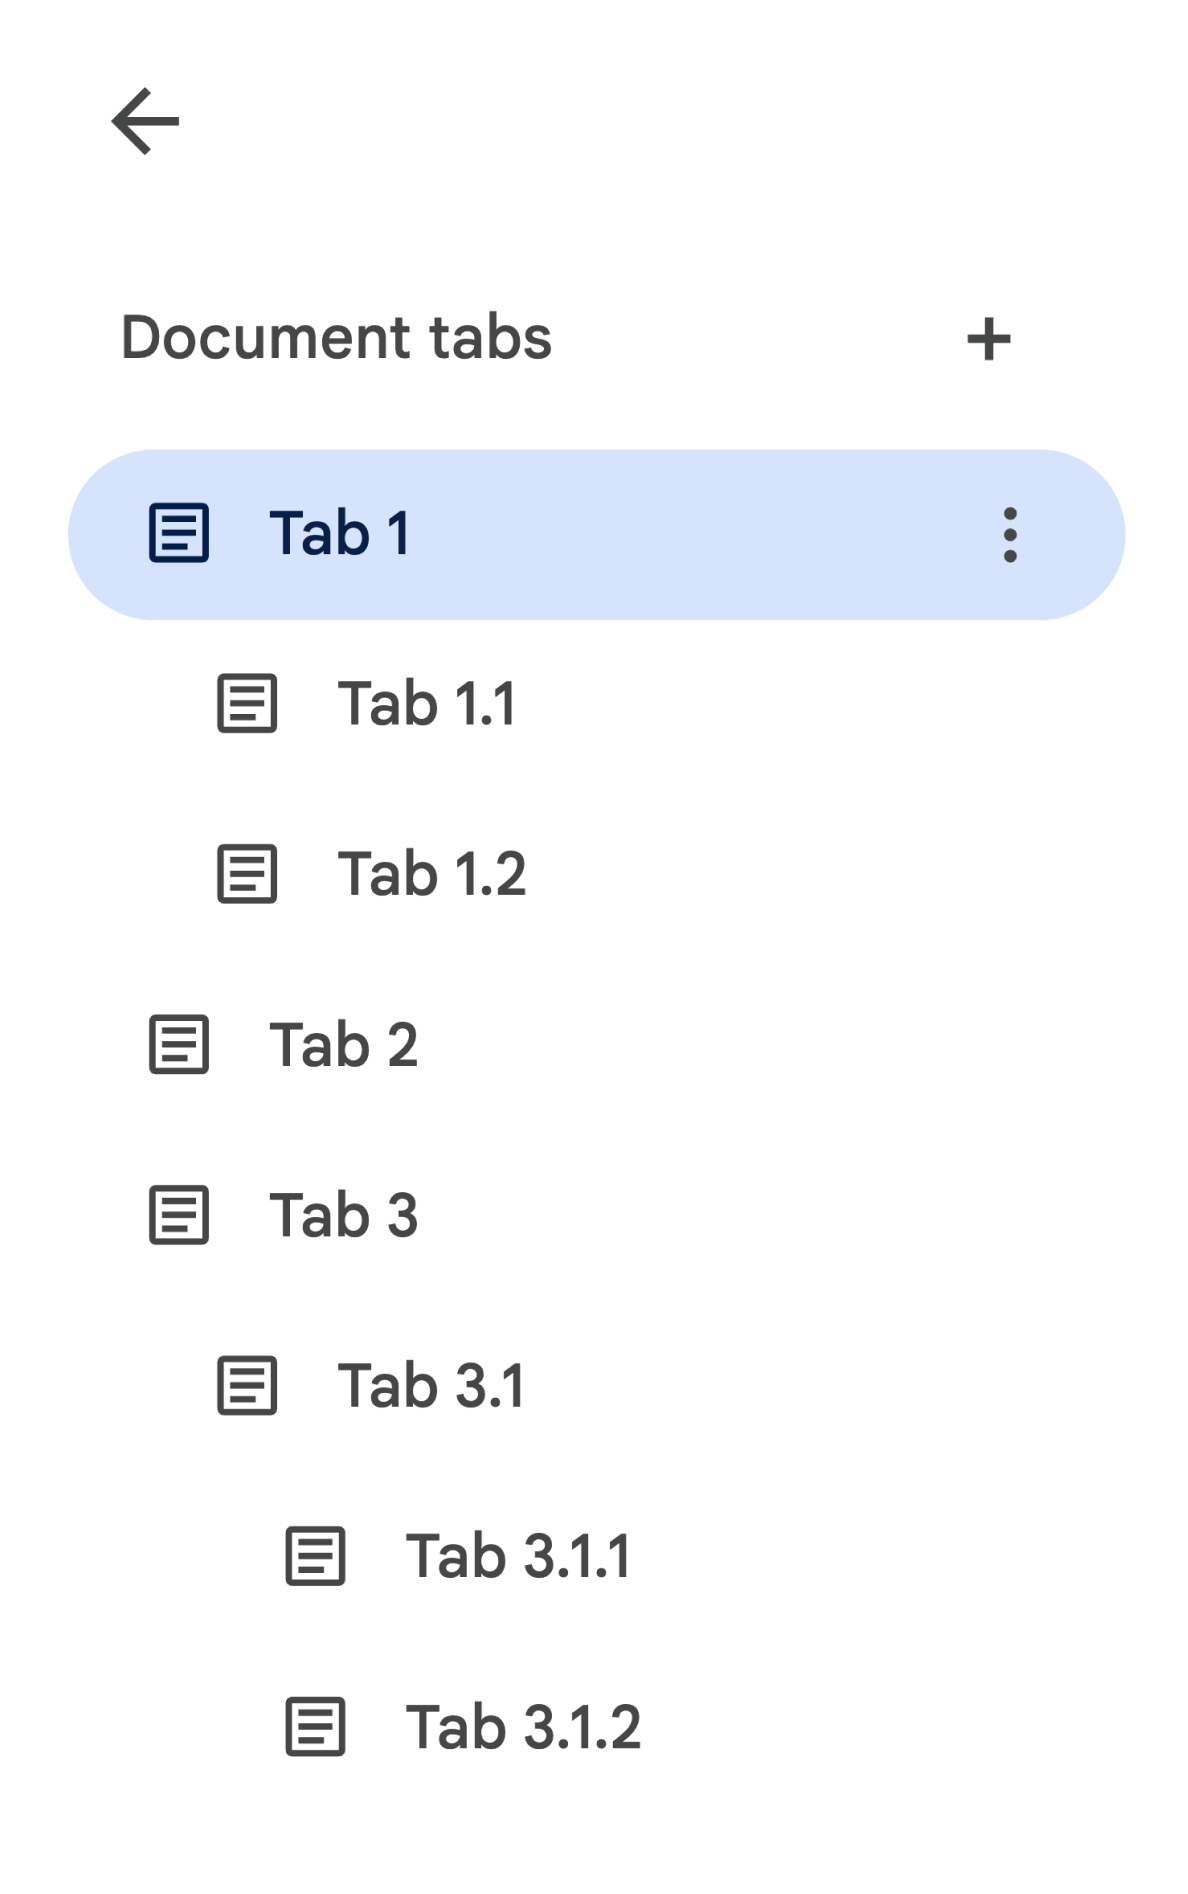 رابط کاربری Tablist شامل سه برگه سطح بالا است که برخی از آنها دارای برگه های فرزند هستند